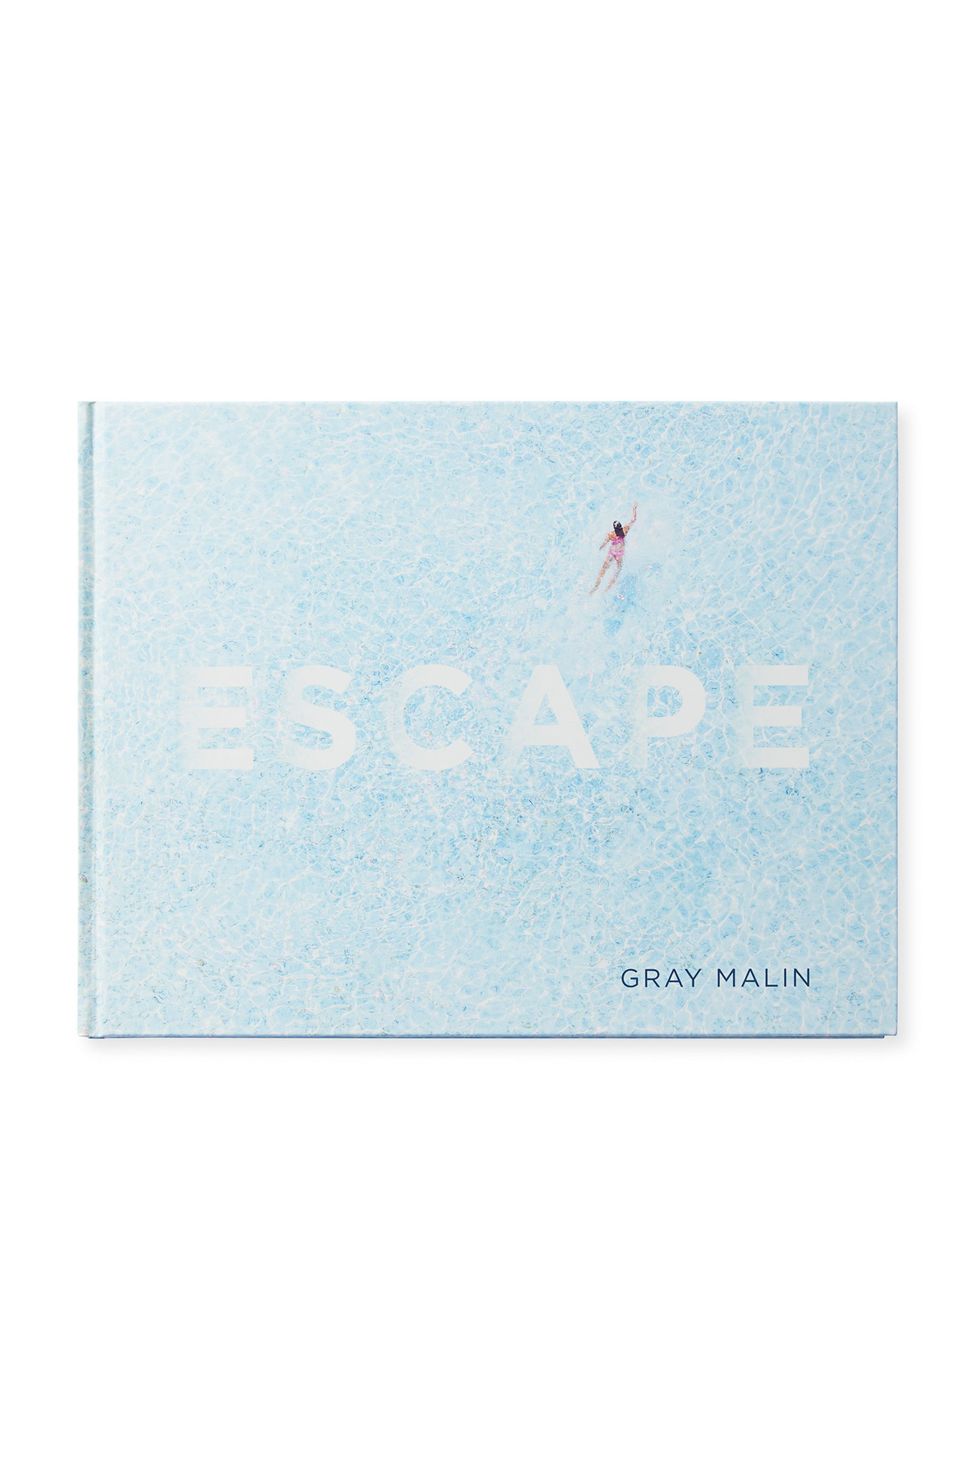  "Escape" by Gray Malin